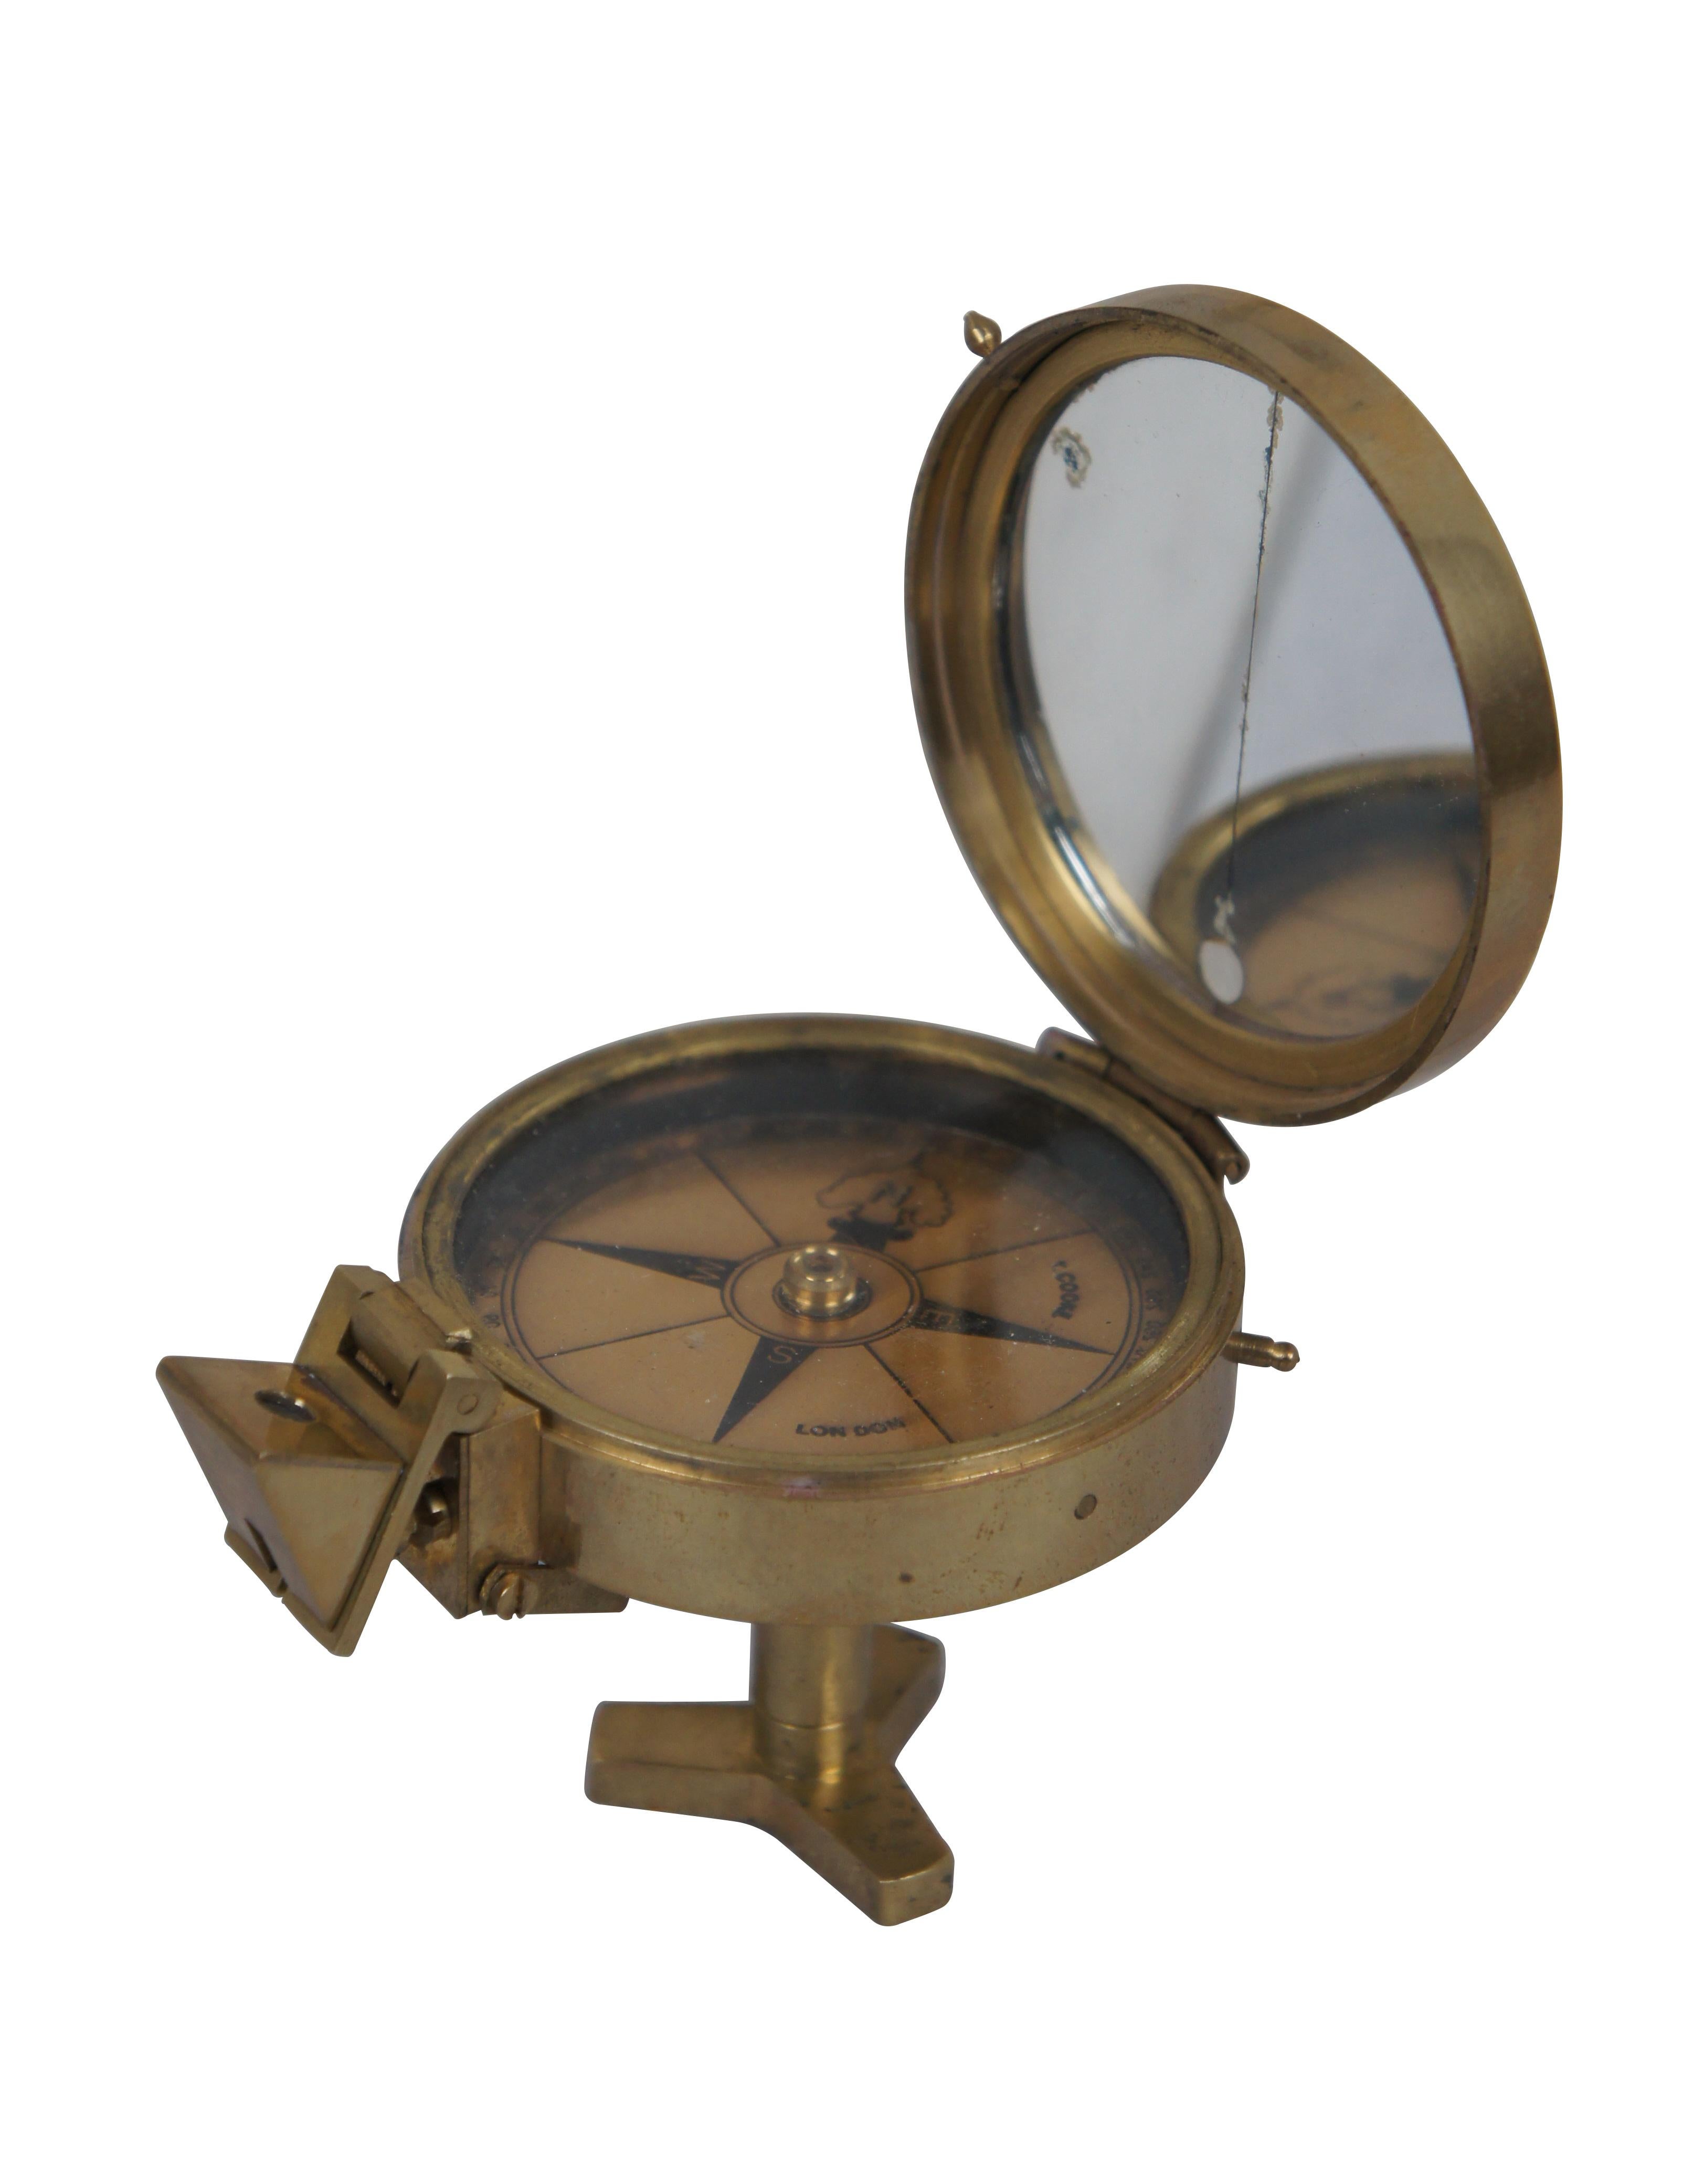 Vintage T. Cooke of London England prismatischer Kompass. Messinggehäuse mit verspiegeltem Innendeckel, Faltprisma, metallisches Messinggesicht und kurzer Ständer, der zur Stabilisierung auf ein Stativ geschraubt werden kann.

